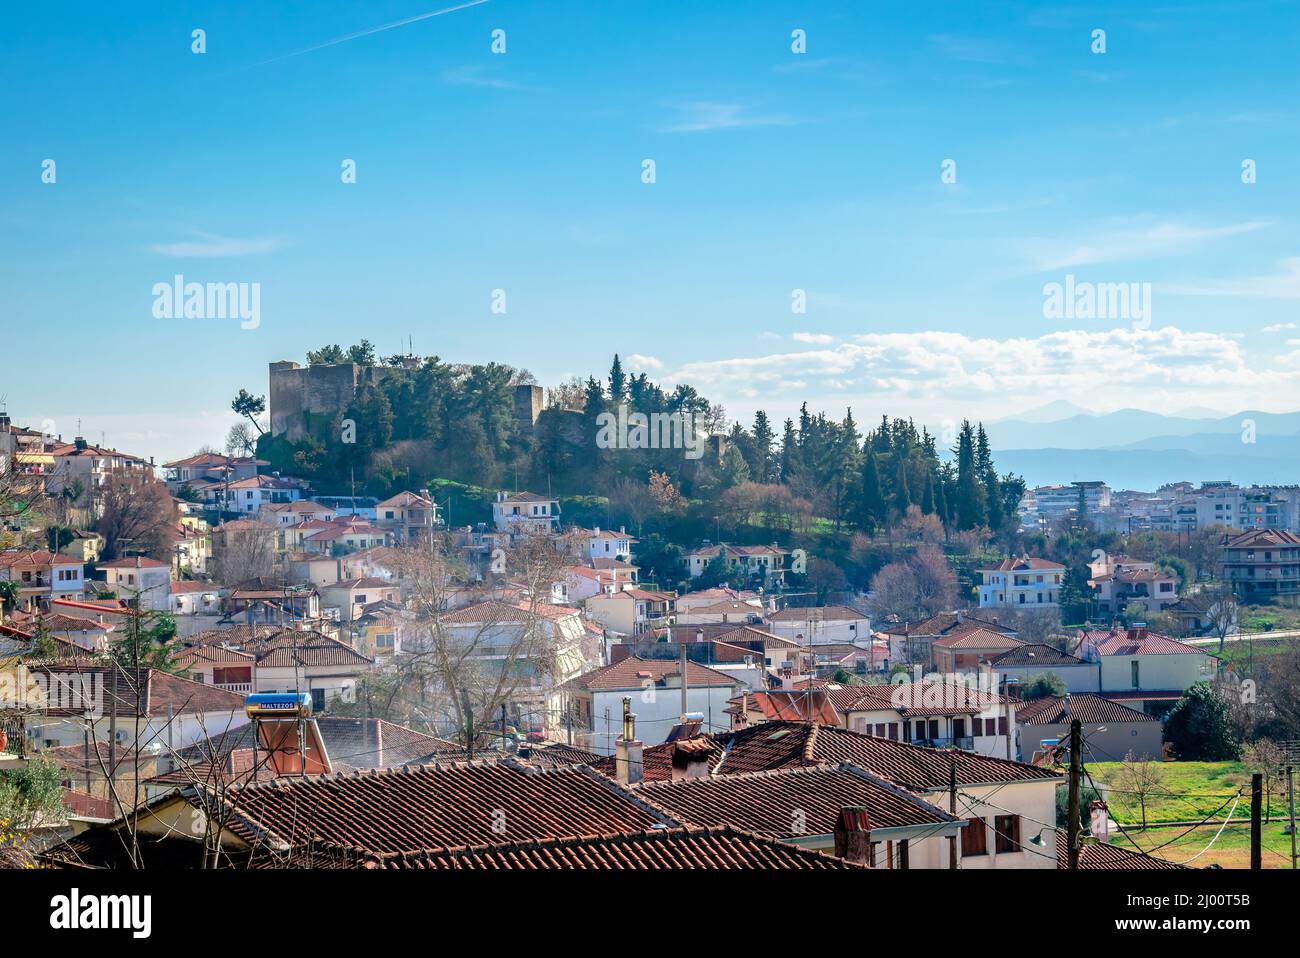 Vue panoramique sur la vieille ville de Trikala, en Thessalie, en Grèce, avec la colline de Profitis Ilias et le château byzantin médiéval. Banque D'Images